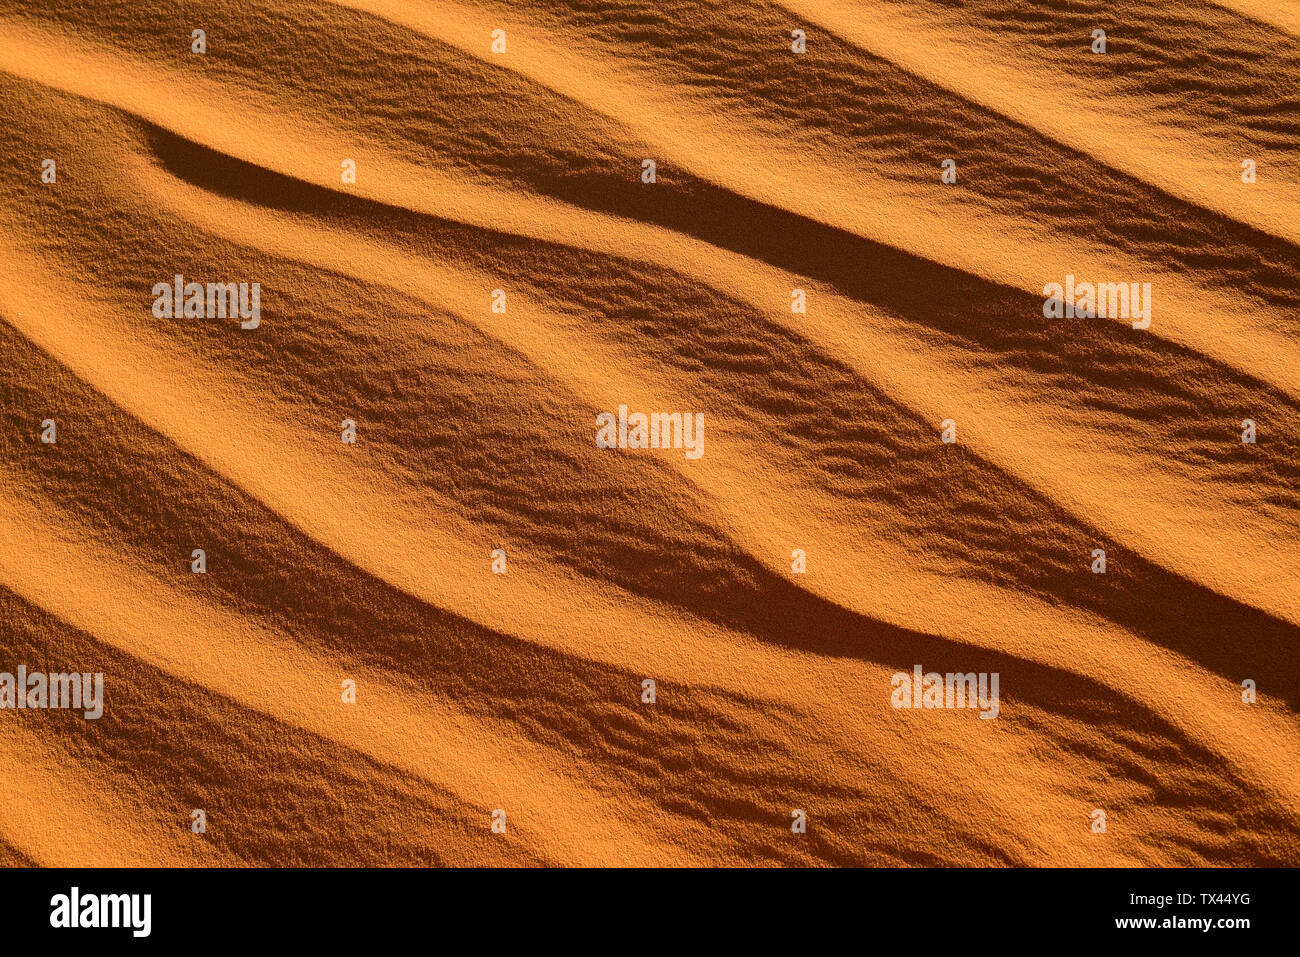 L'Afrique, Algérie, Sahara, marques d'ondulation, de texture sur un sanddune Banque D'Images